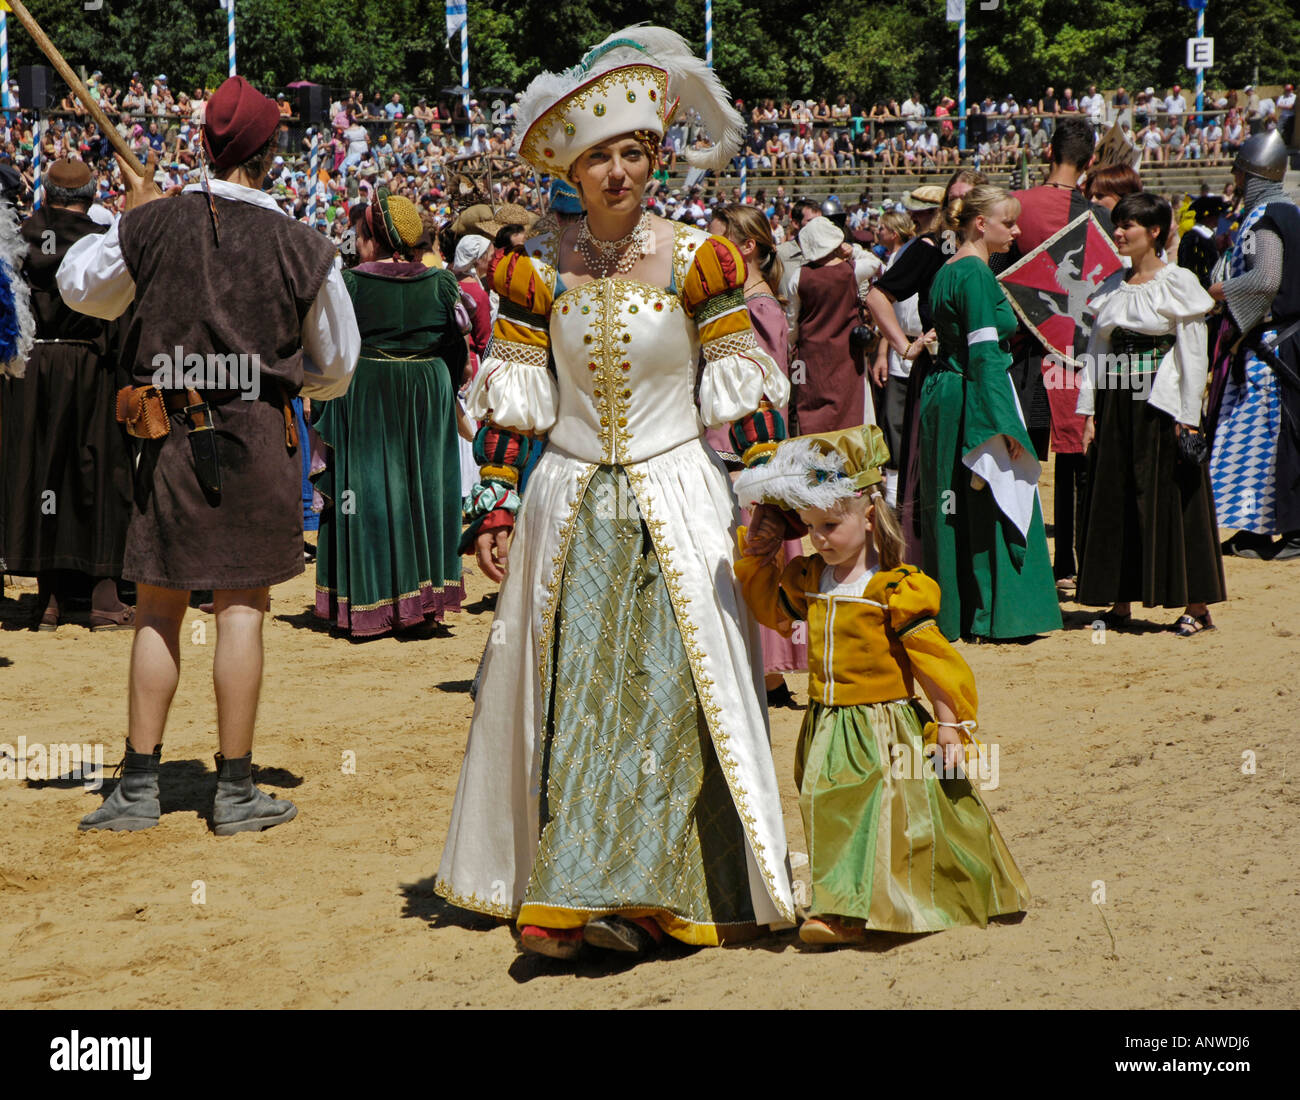 Noble vestidos mujer con niño en traje medieval medieval en la arena, caballero festival Ritterspiele Kaltenberger Foto de stock